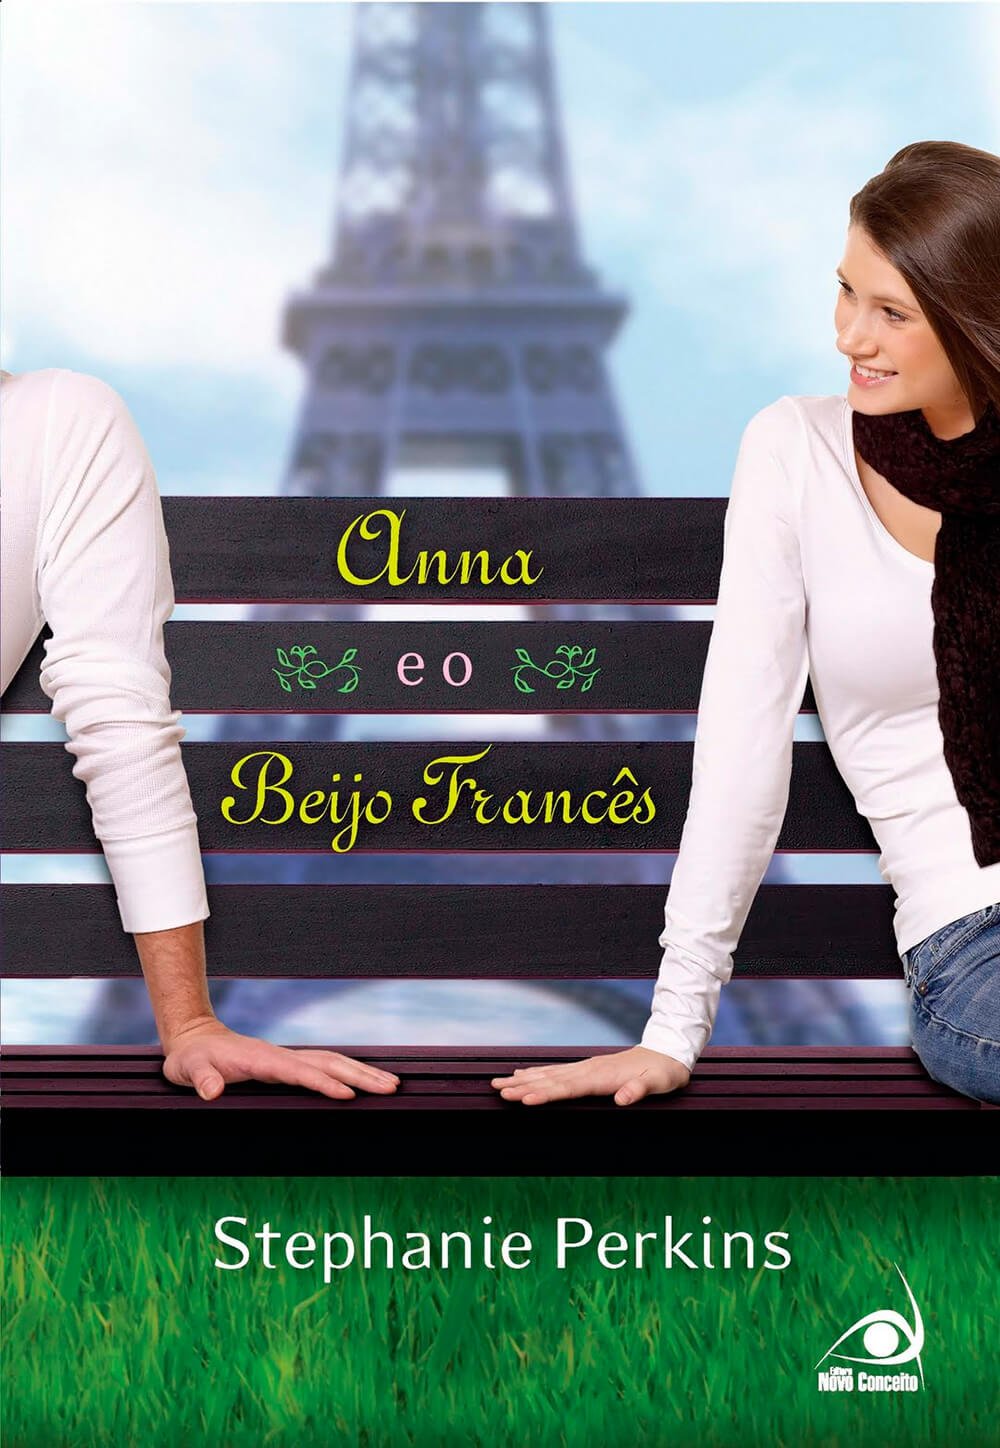 It girls - livros de romance, Anna e o beijo francês - livros de romance - Primavera - Street Style  - https://stealthelook.com.br